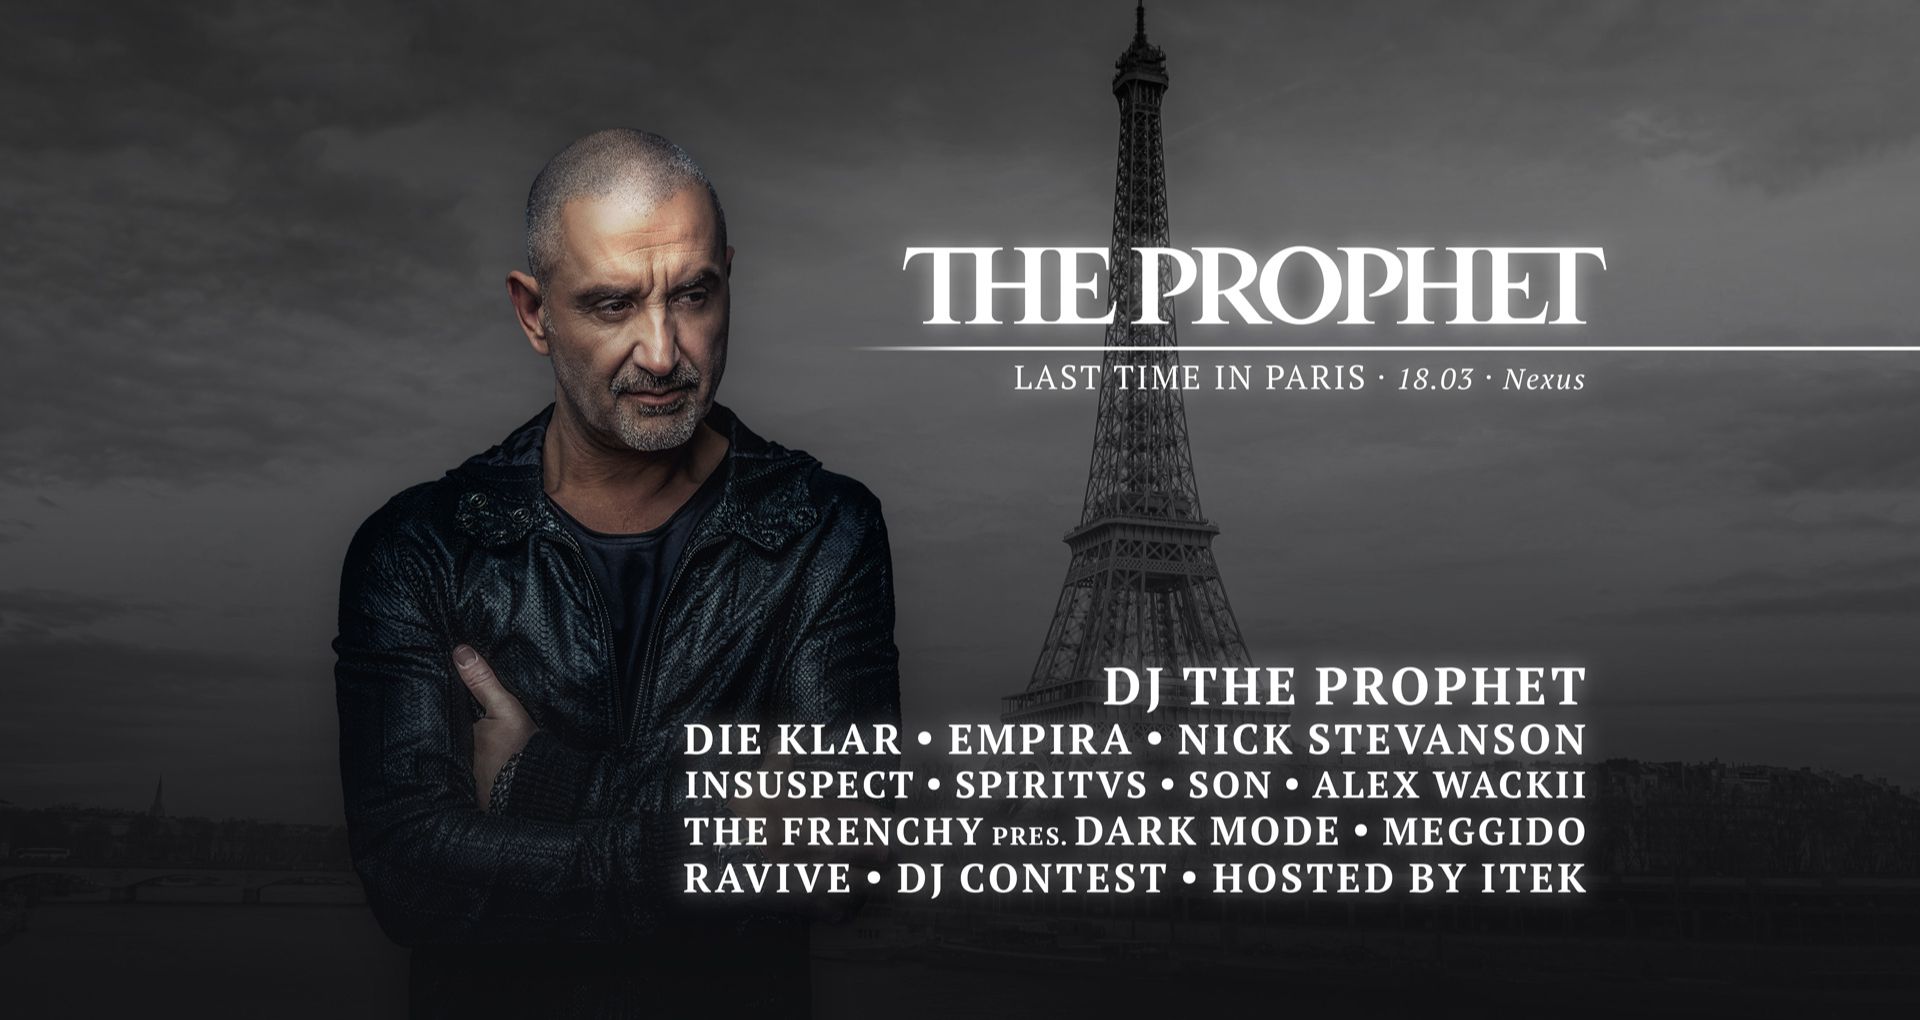 Affiche de The Prophet au Nexus